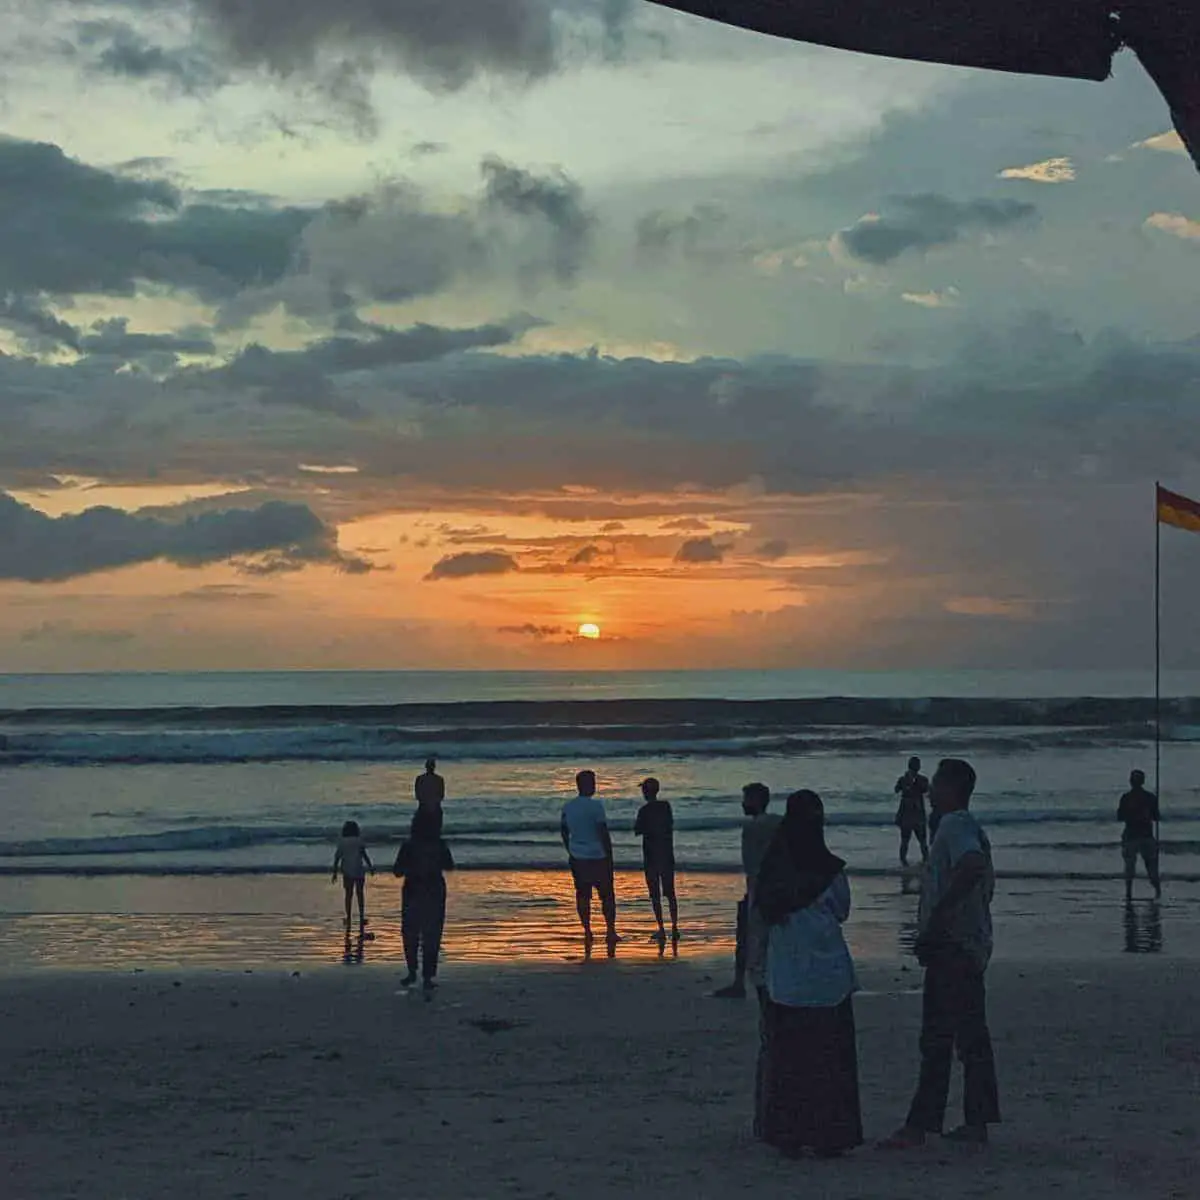 Sunset at Bali beach free things to do in Canggu Bali